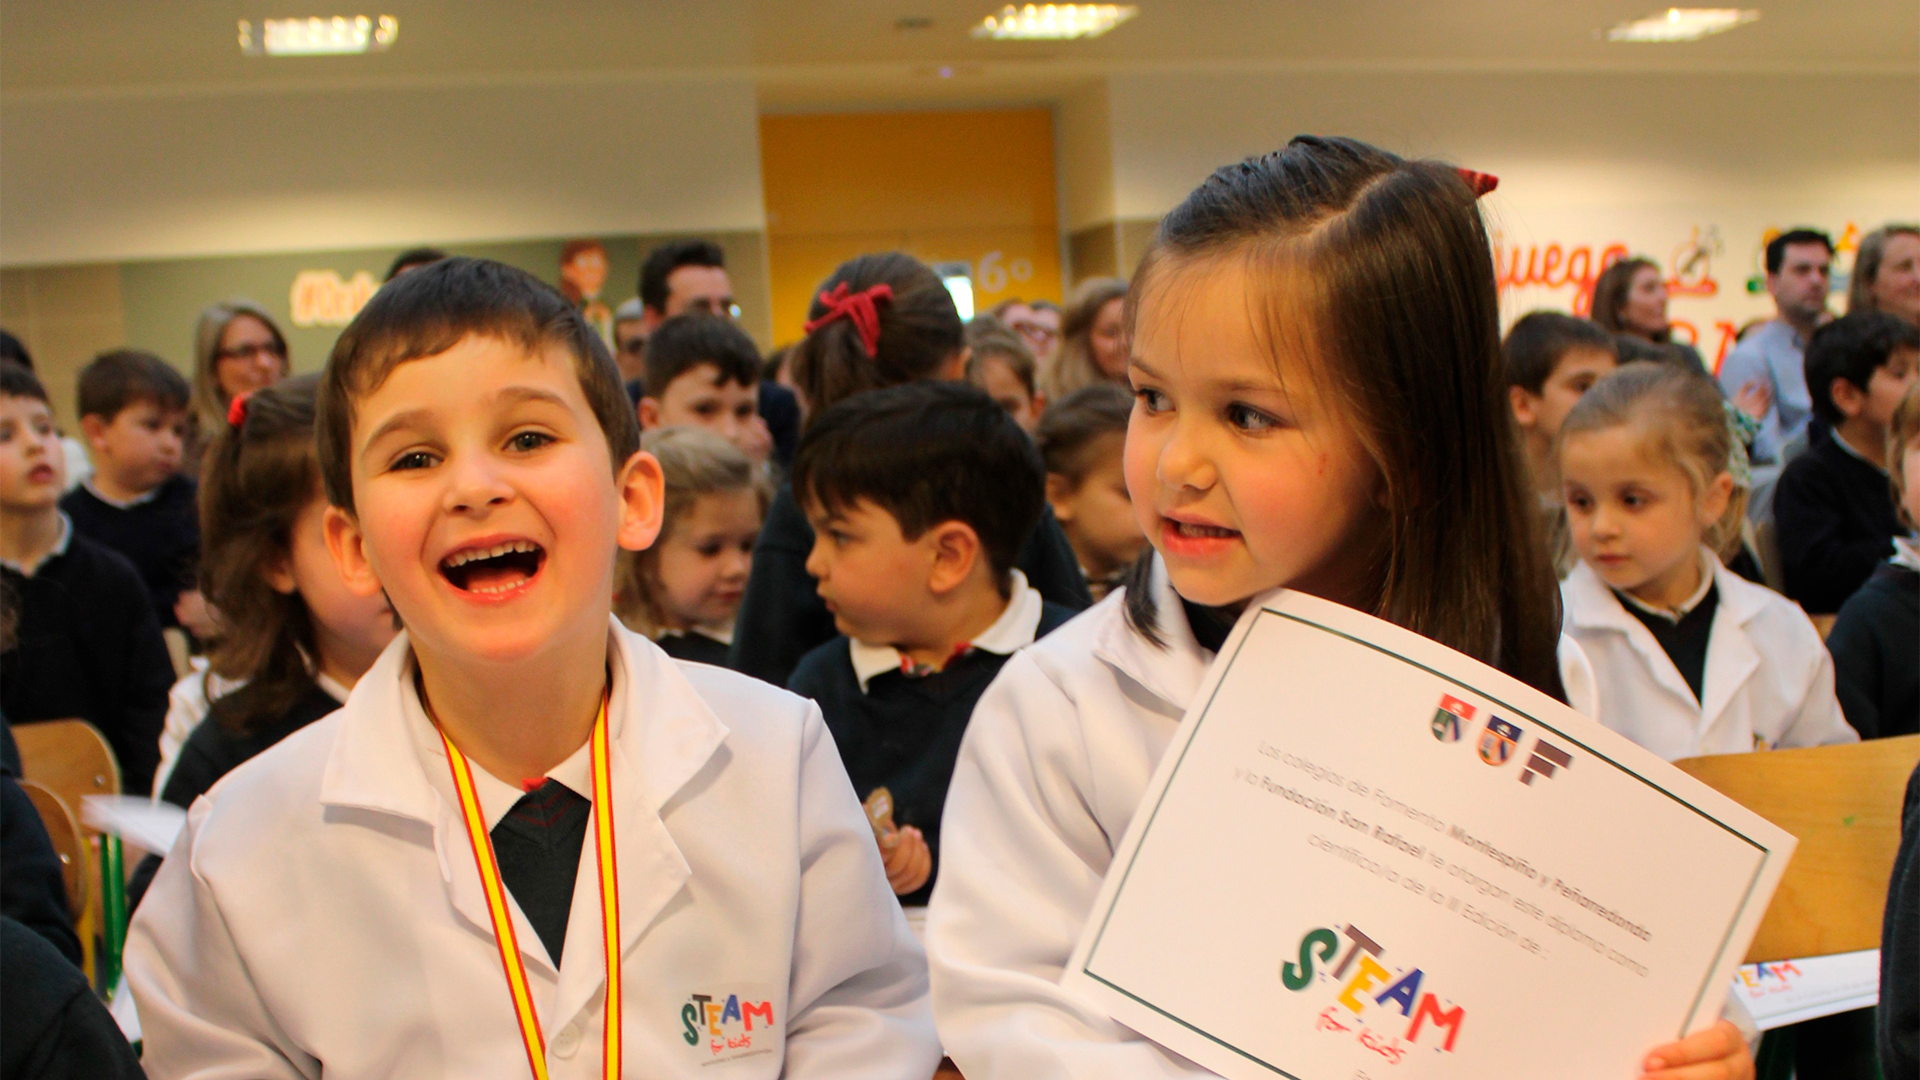 STEAM for Kids en los colegios Montespiño y Peñarredonda